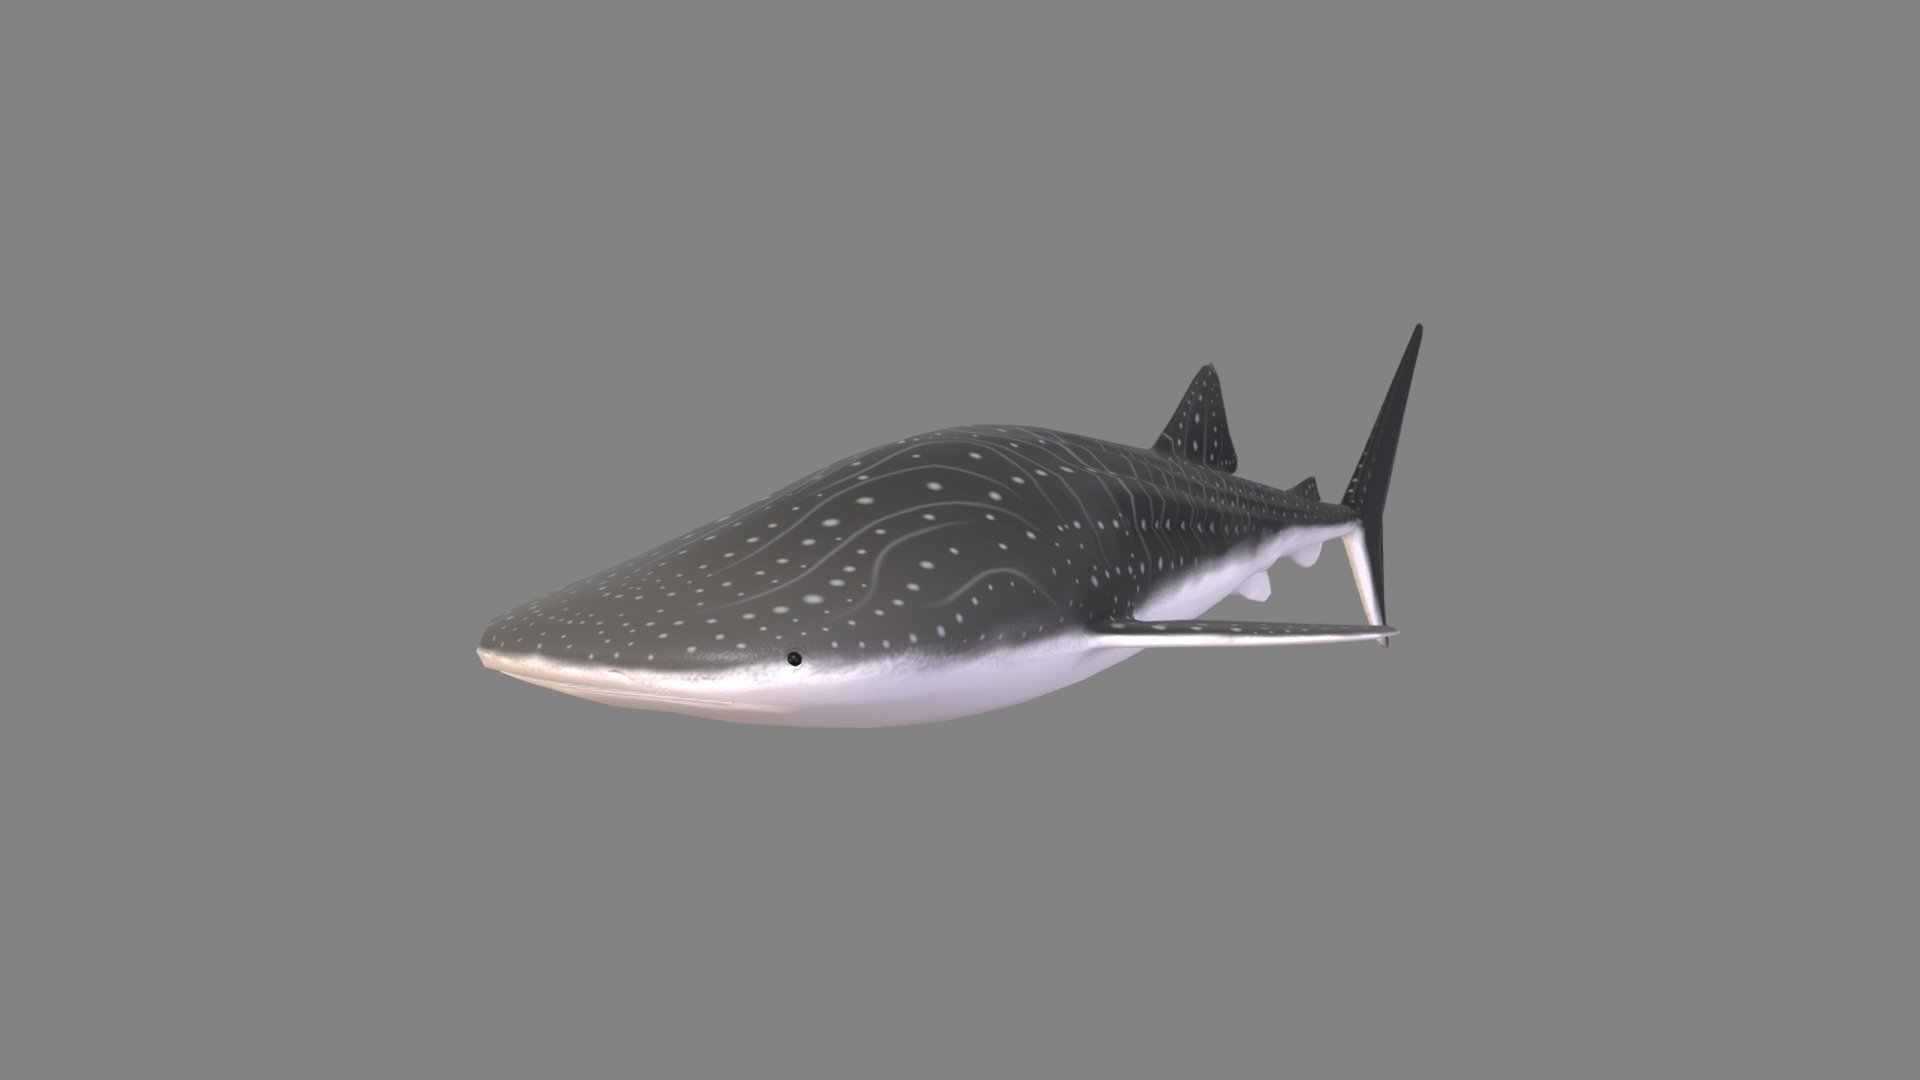 whale sharks 3d model